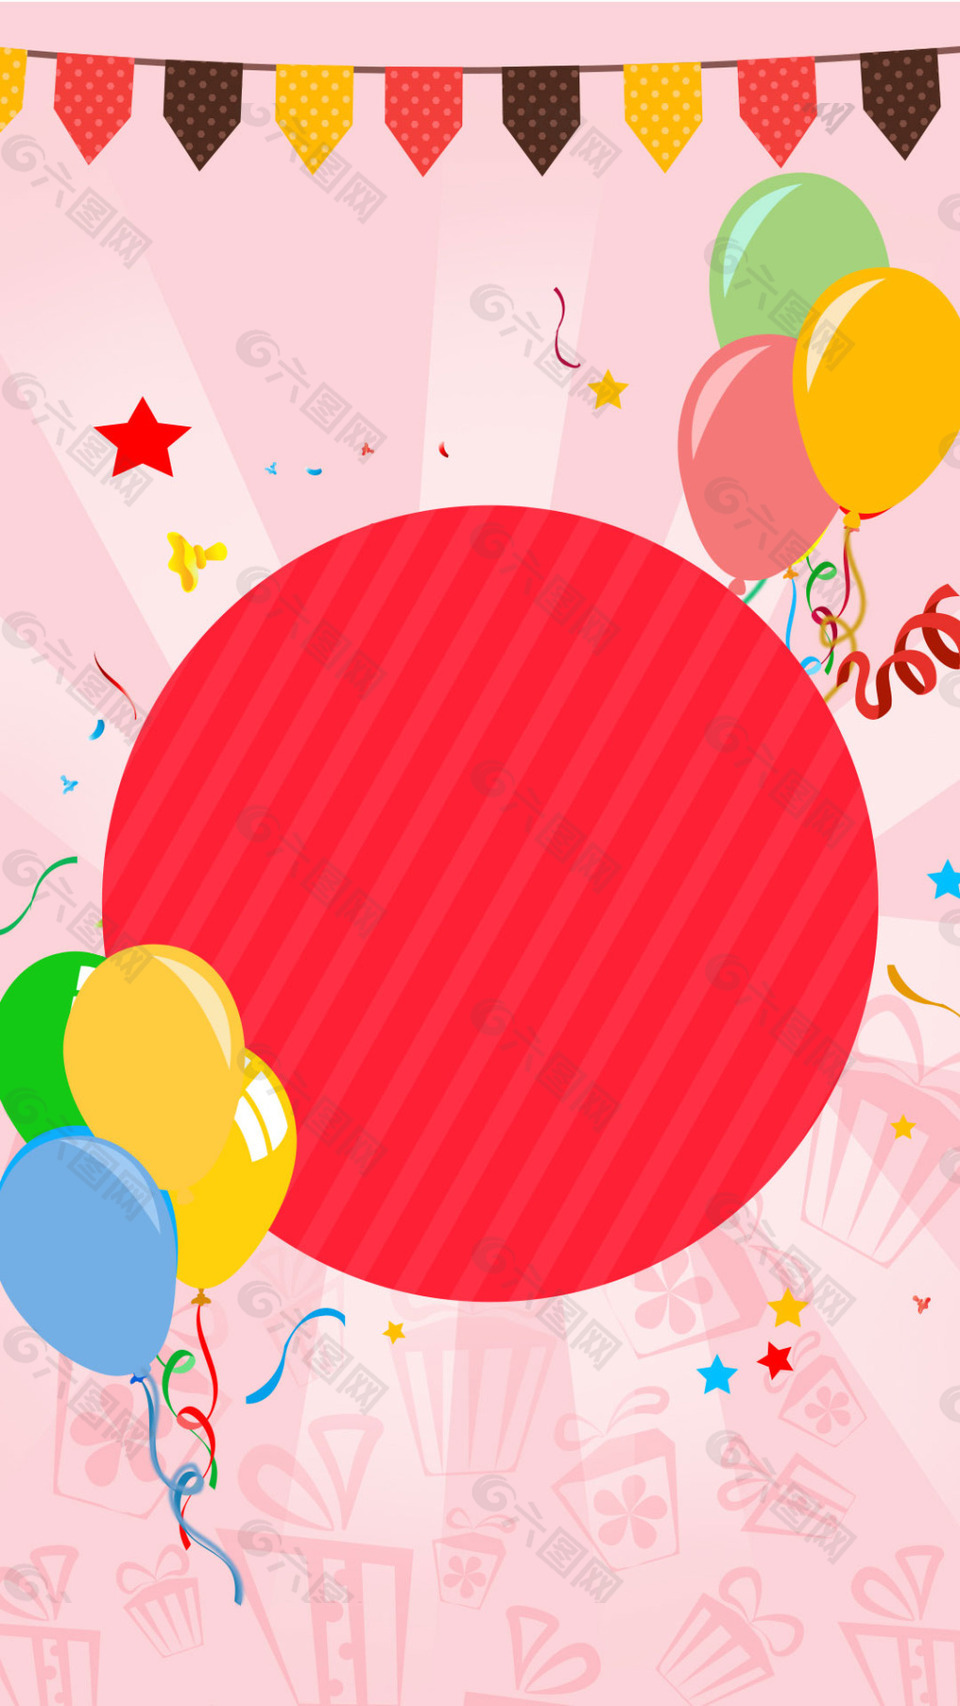 彩色气球生日快乐H5背景素材